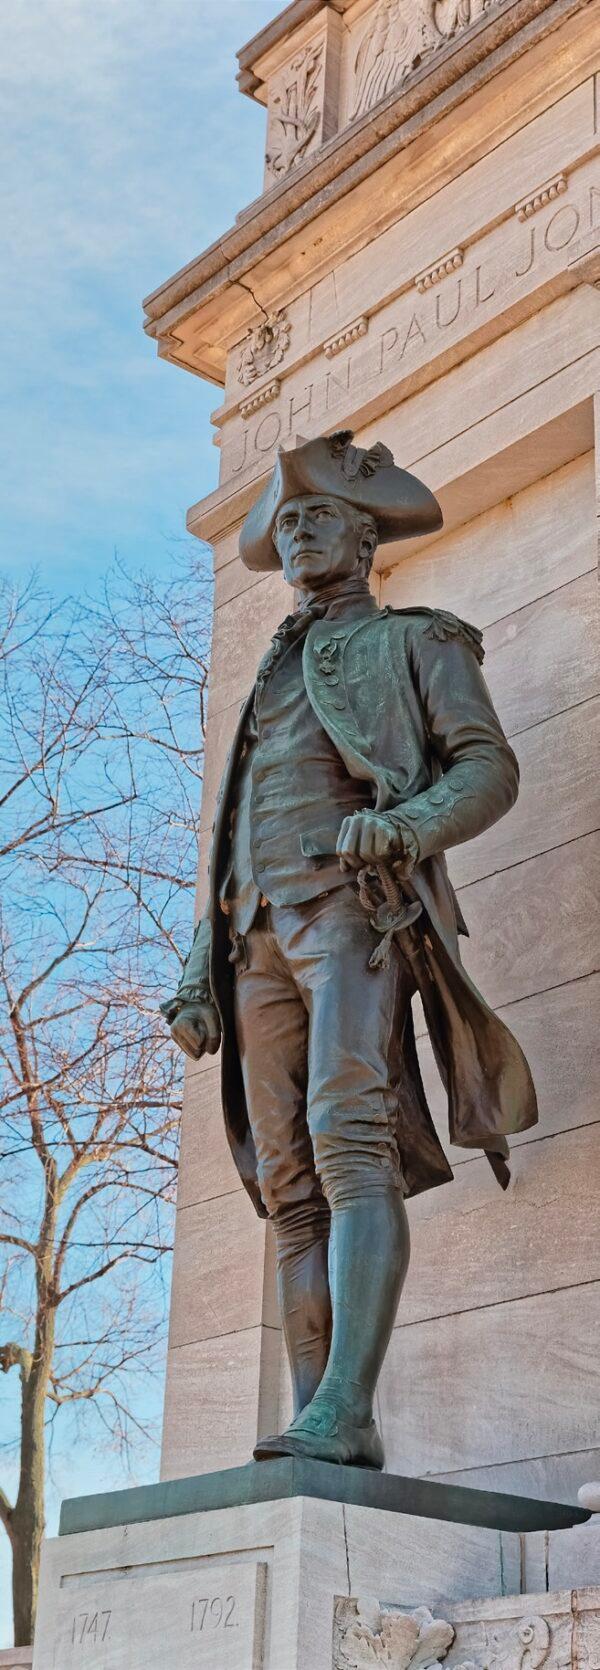 Bronze statue of Jones at the John Paul Jones Memorial in West Potomac Park, Washington, D.C. (OPIS Zagreb/Shutterstock)